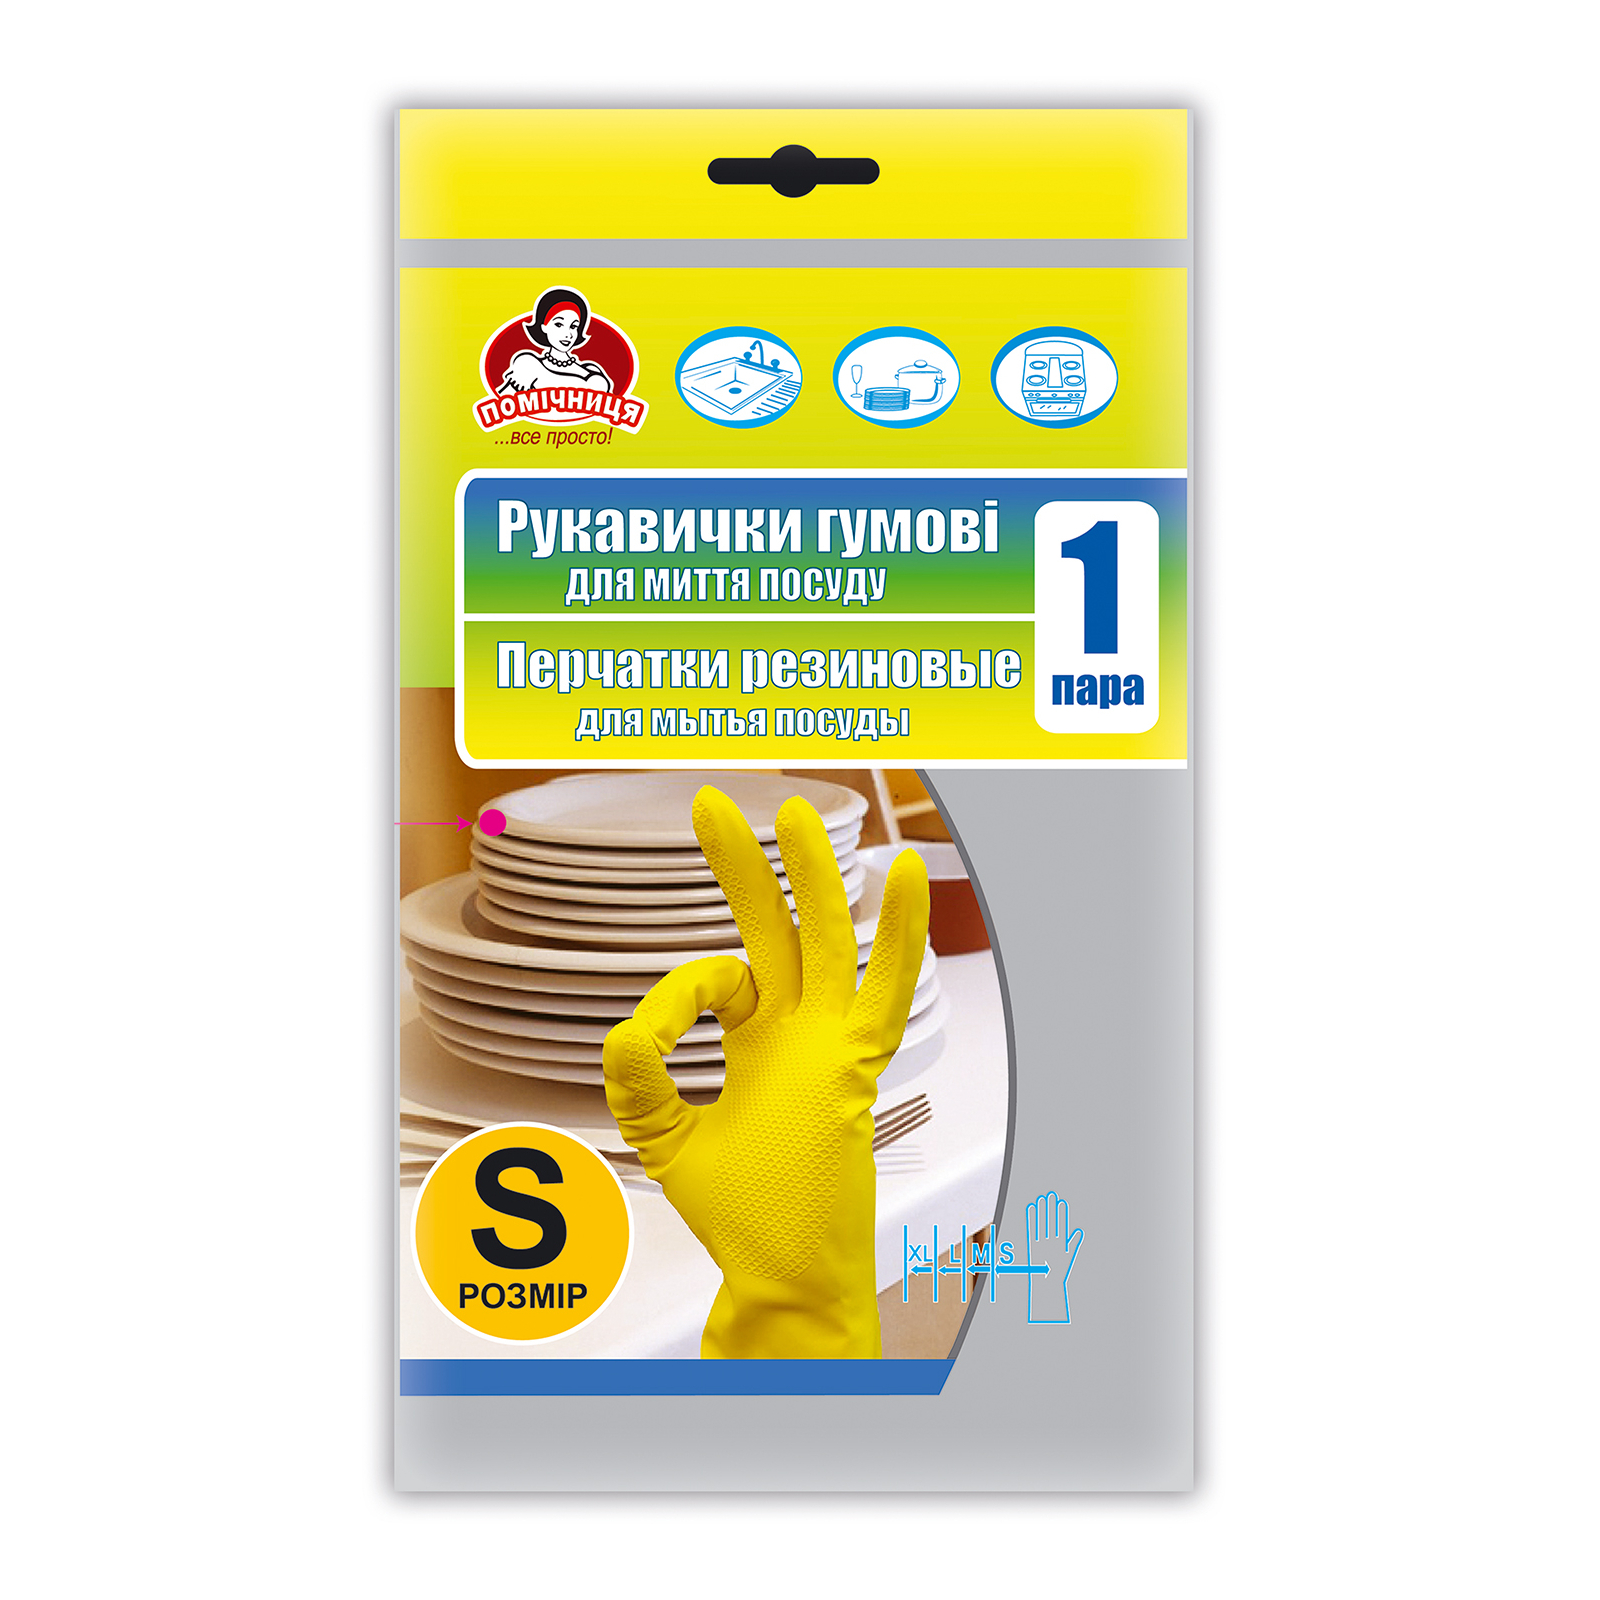 Перчатки хозяйственные Помічниця Сверхпрочные Для посуды Желтые размер 6 (S) (4820012341238)